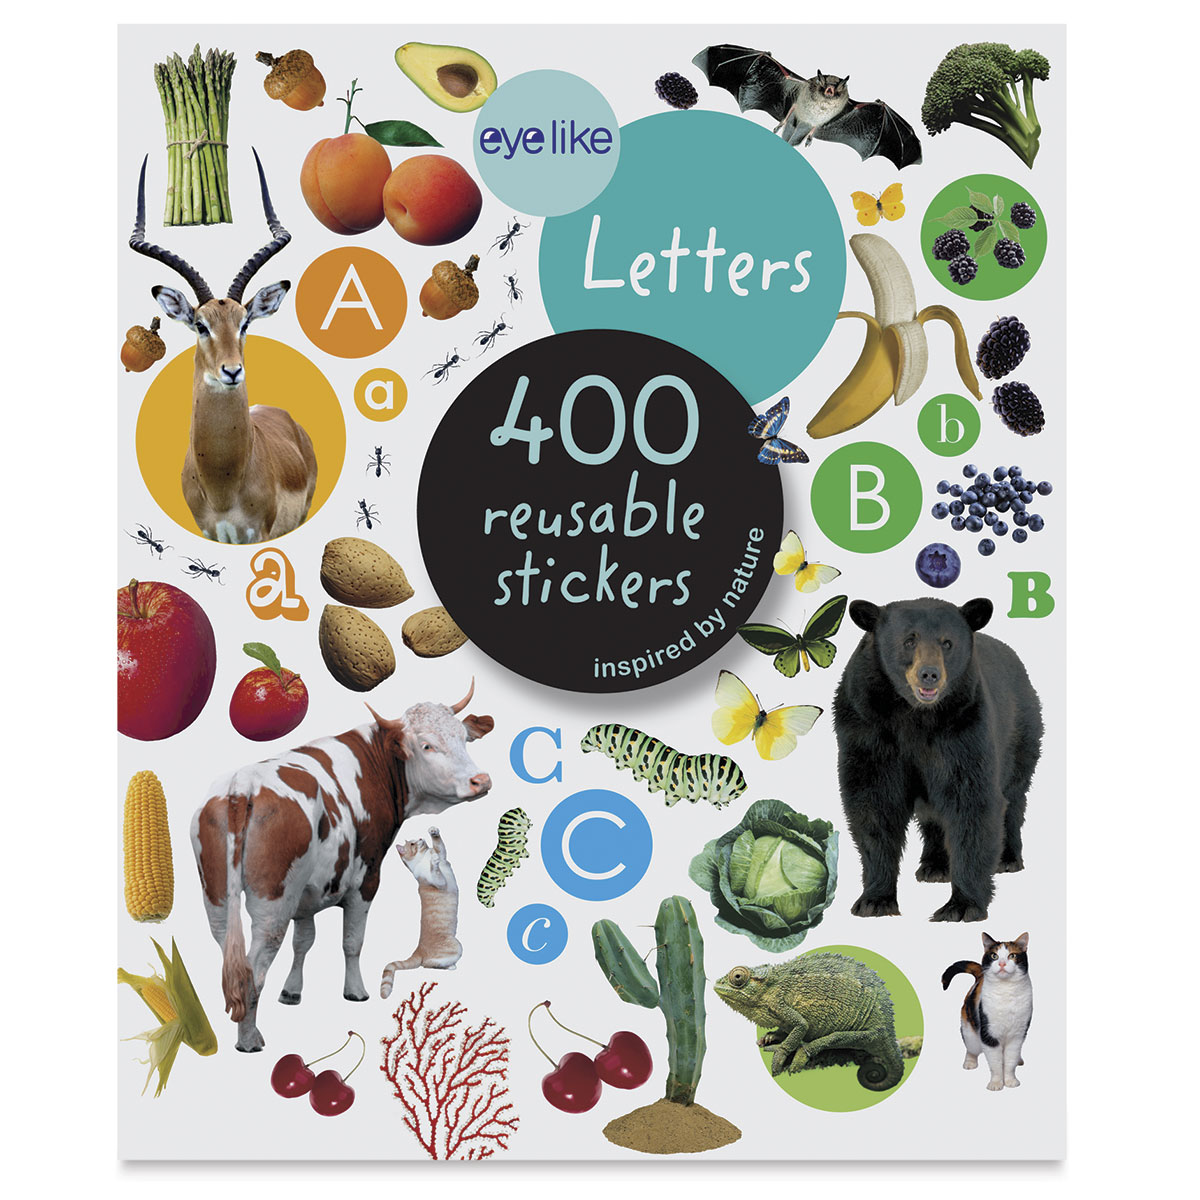 huiselijk Veilig voormalig Eyelike Letters Reusable Stickers | BLICK Art Materials